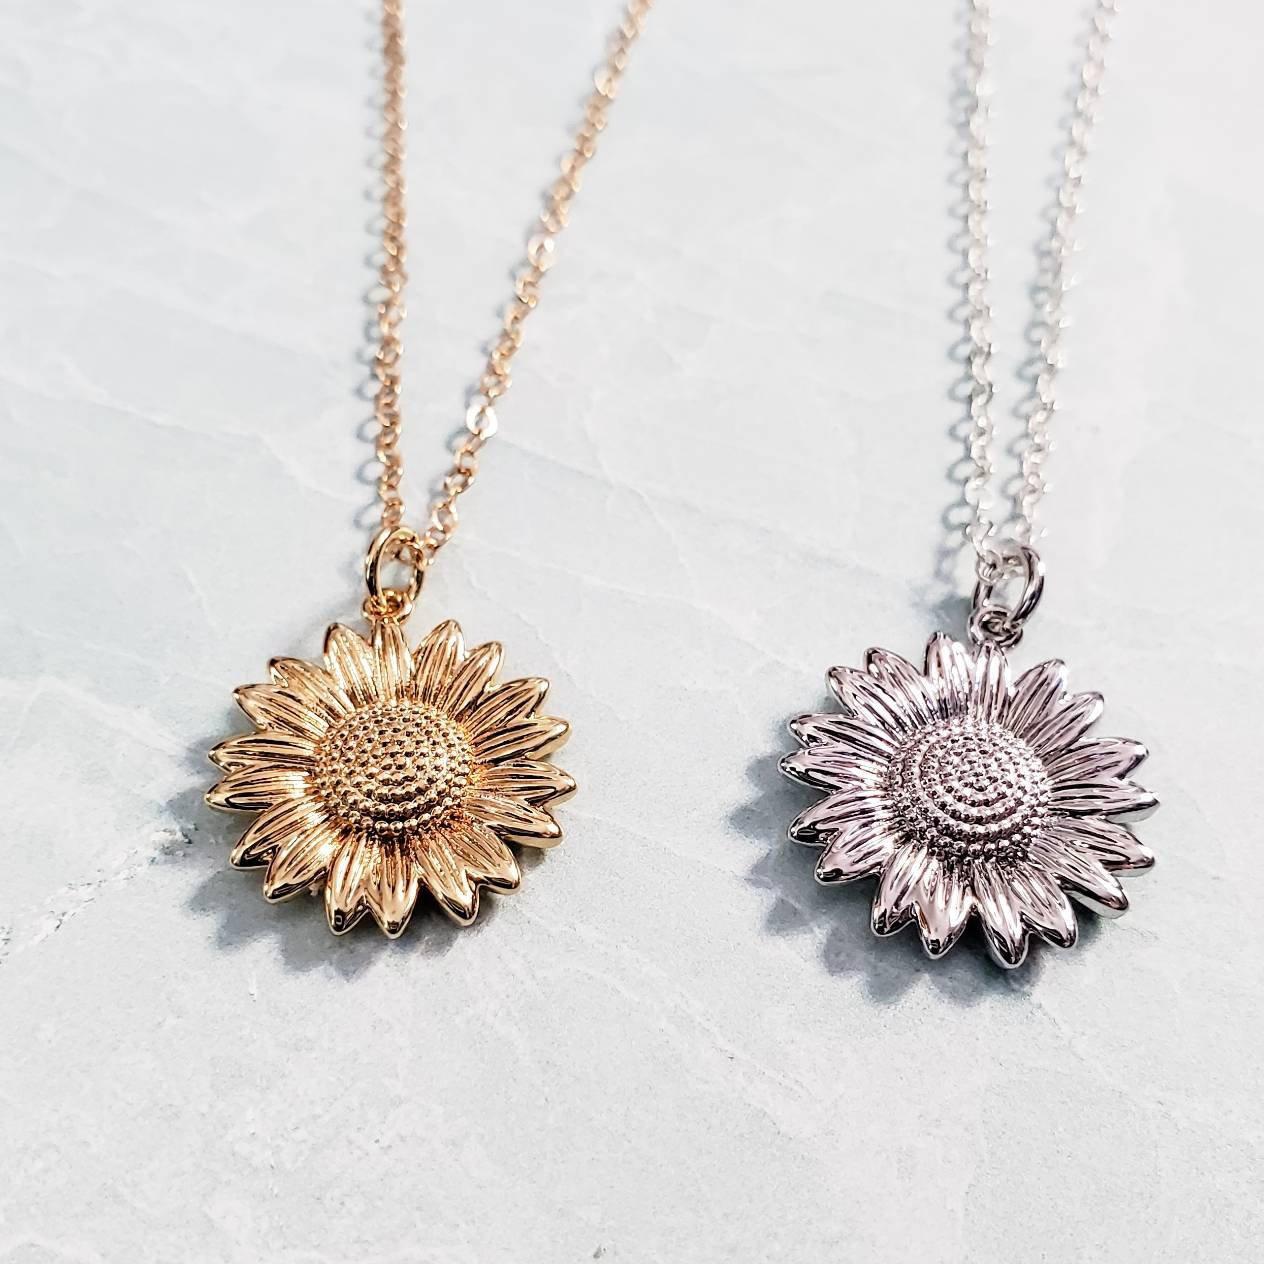 Sunflower Pendant Necklace - Shop on Pinterest